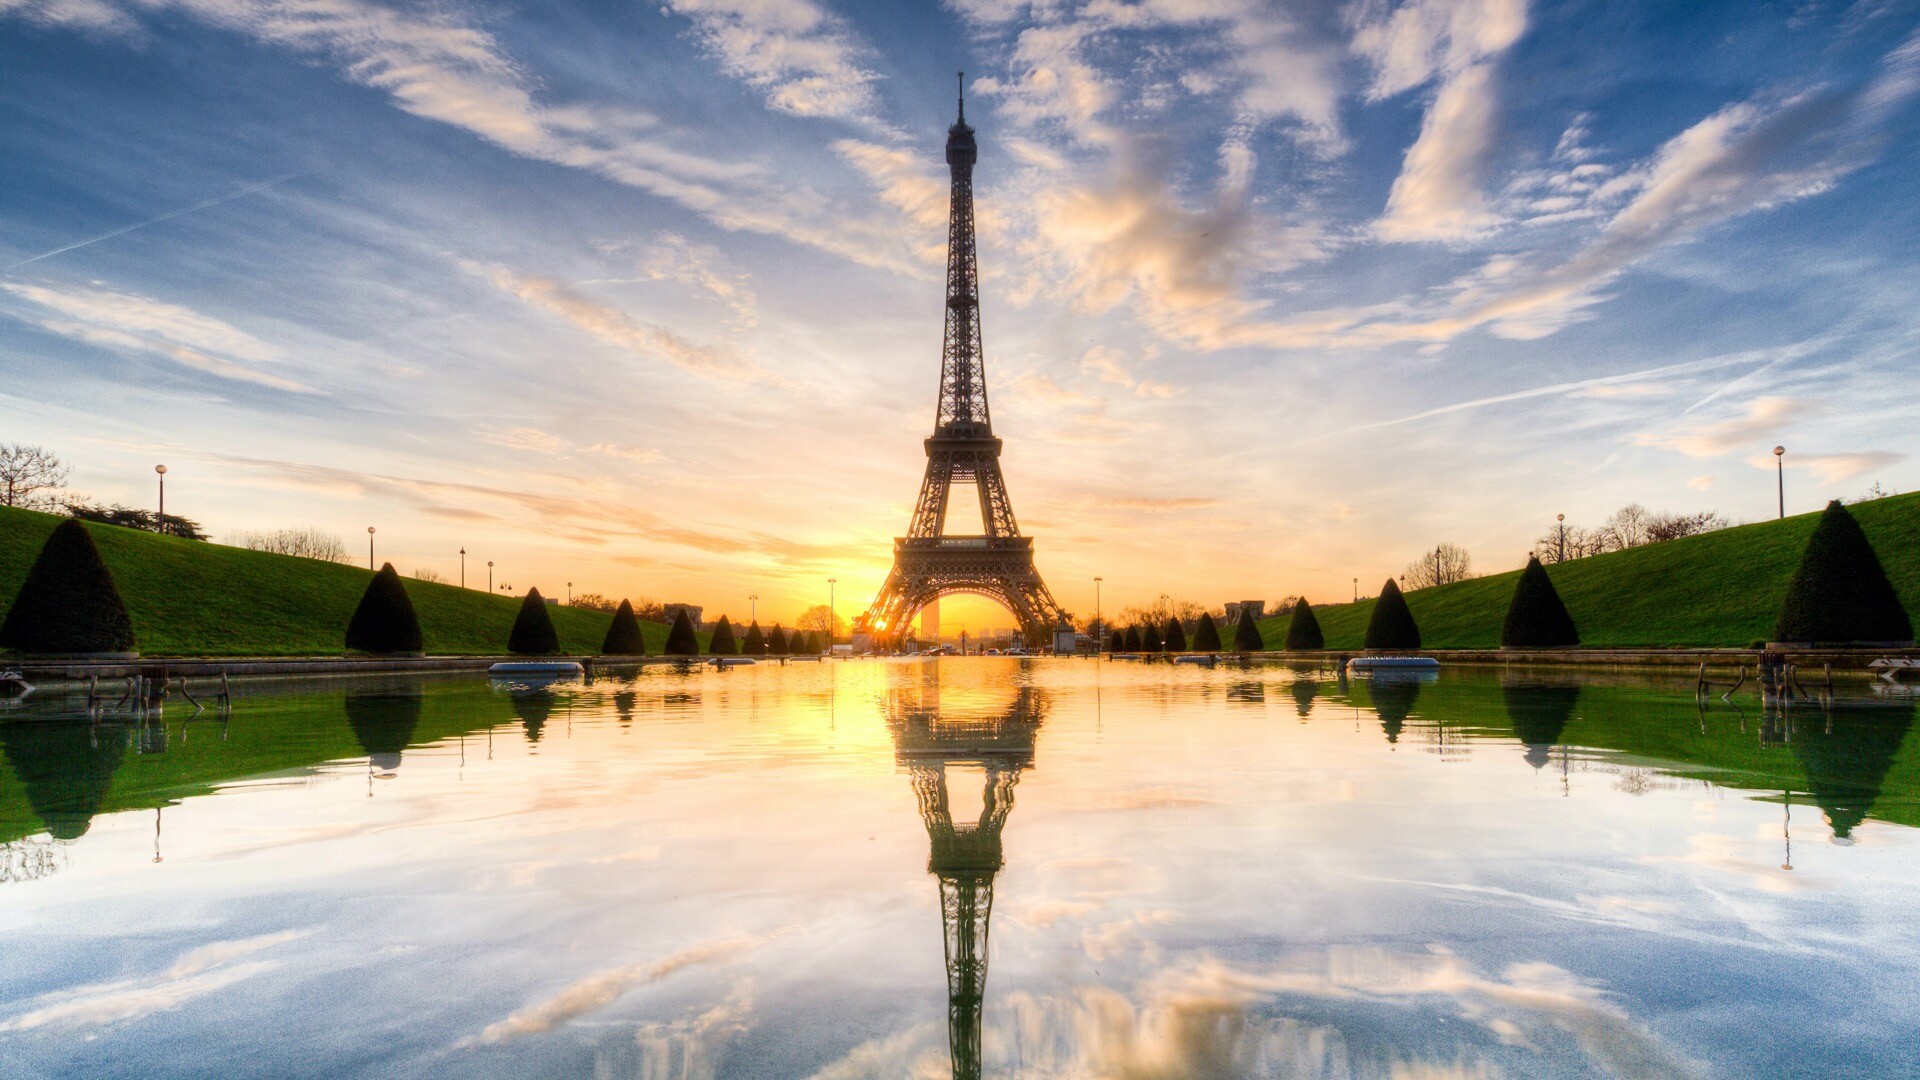 法国巴黎埃菲尔铁塔唯美浪漫桌面壁纸(一)-风景壁纸-壁纸下载-美桌网